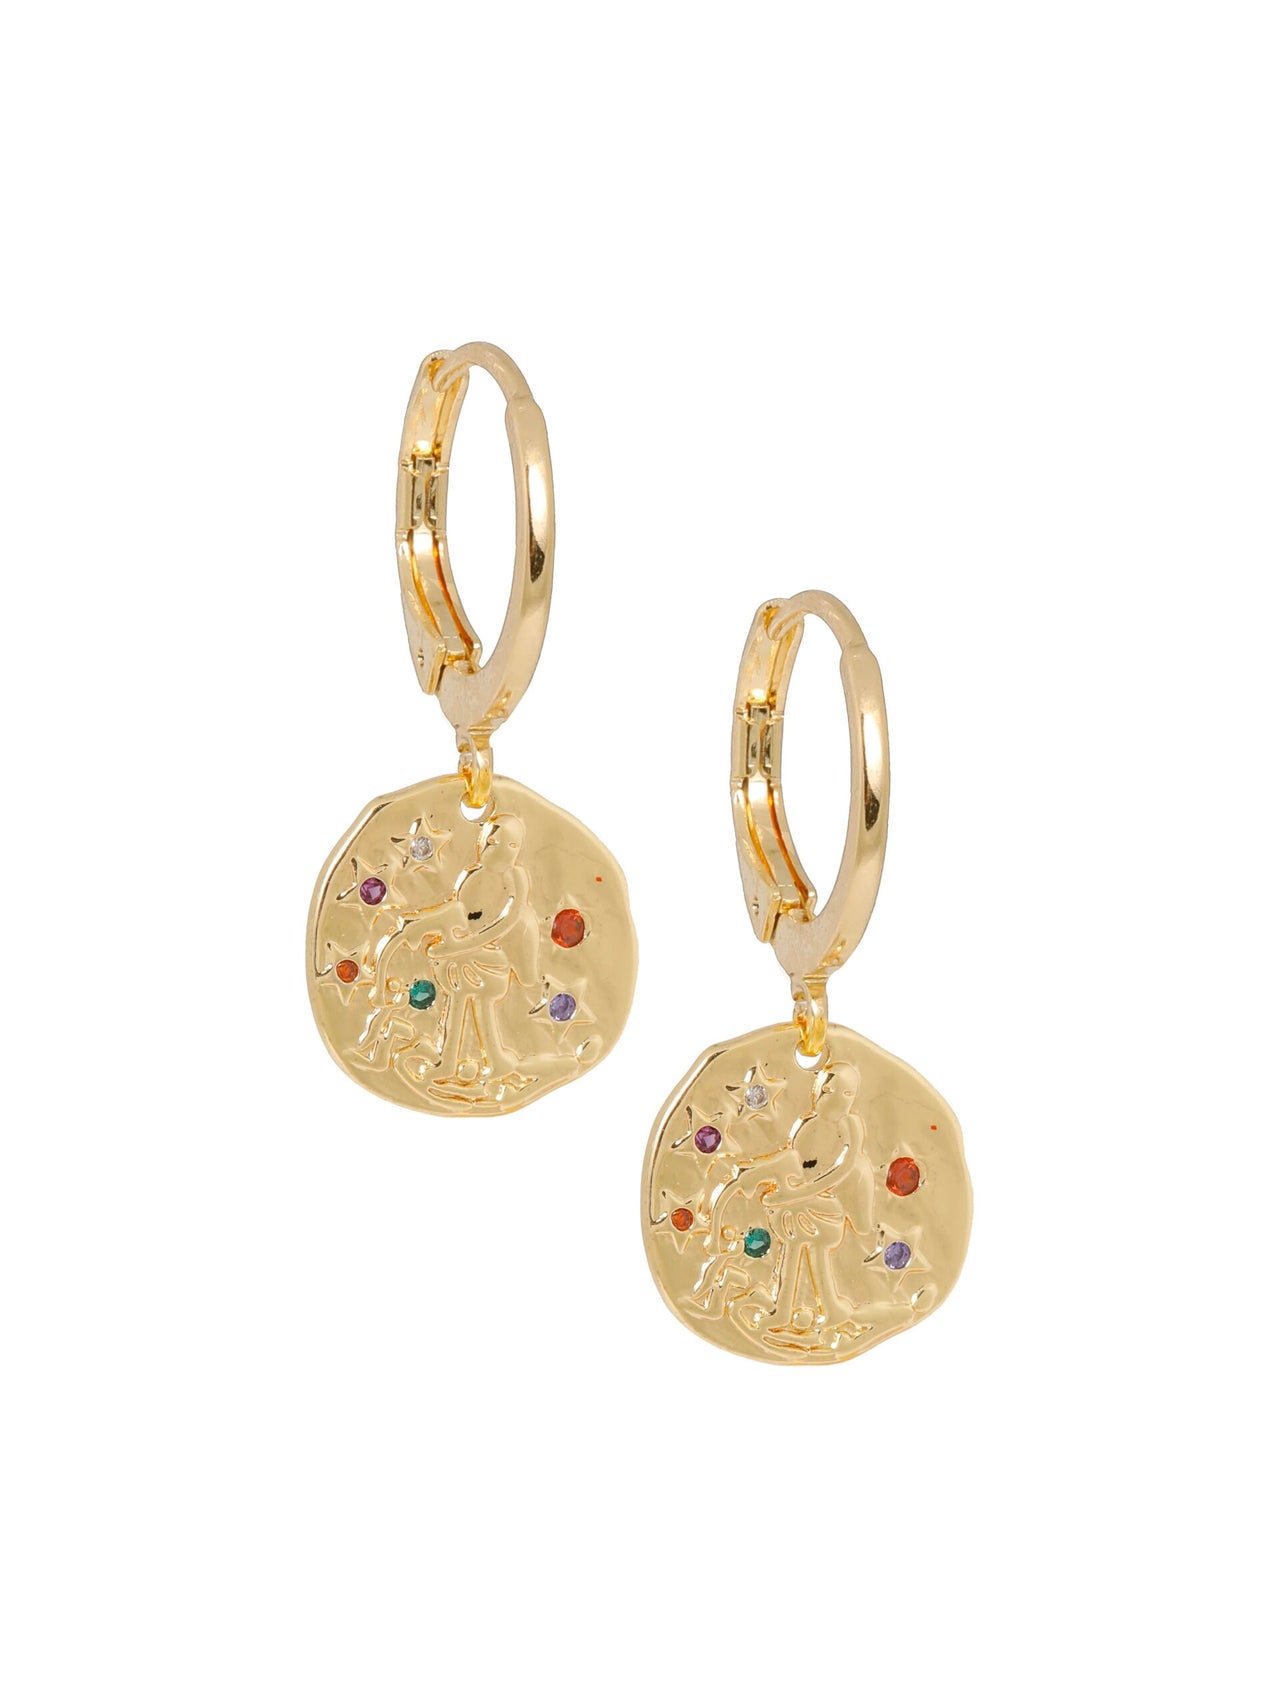 Oorbellen met gouden muntjes en gekleurde steentje goud - LEEF mode en accessoires